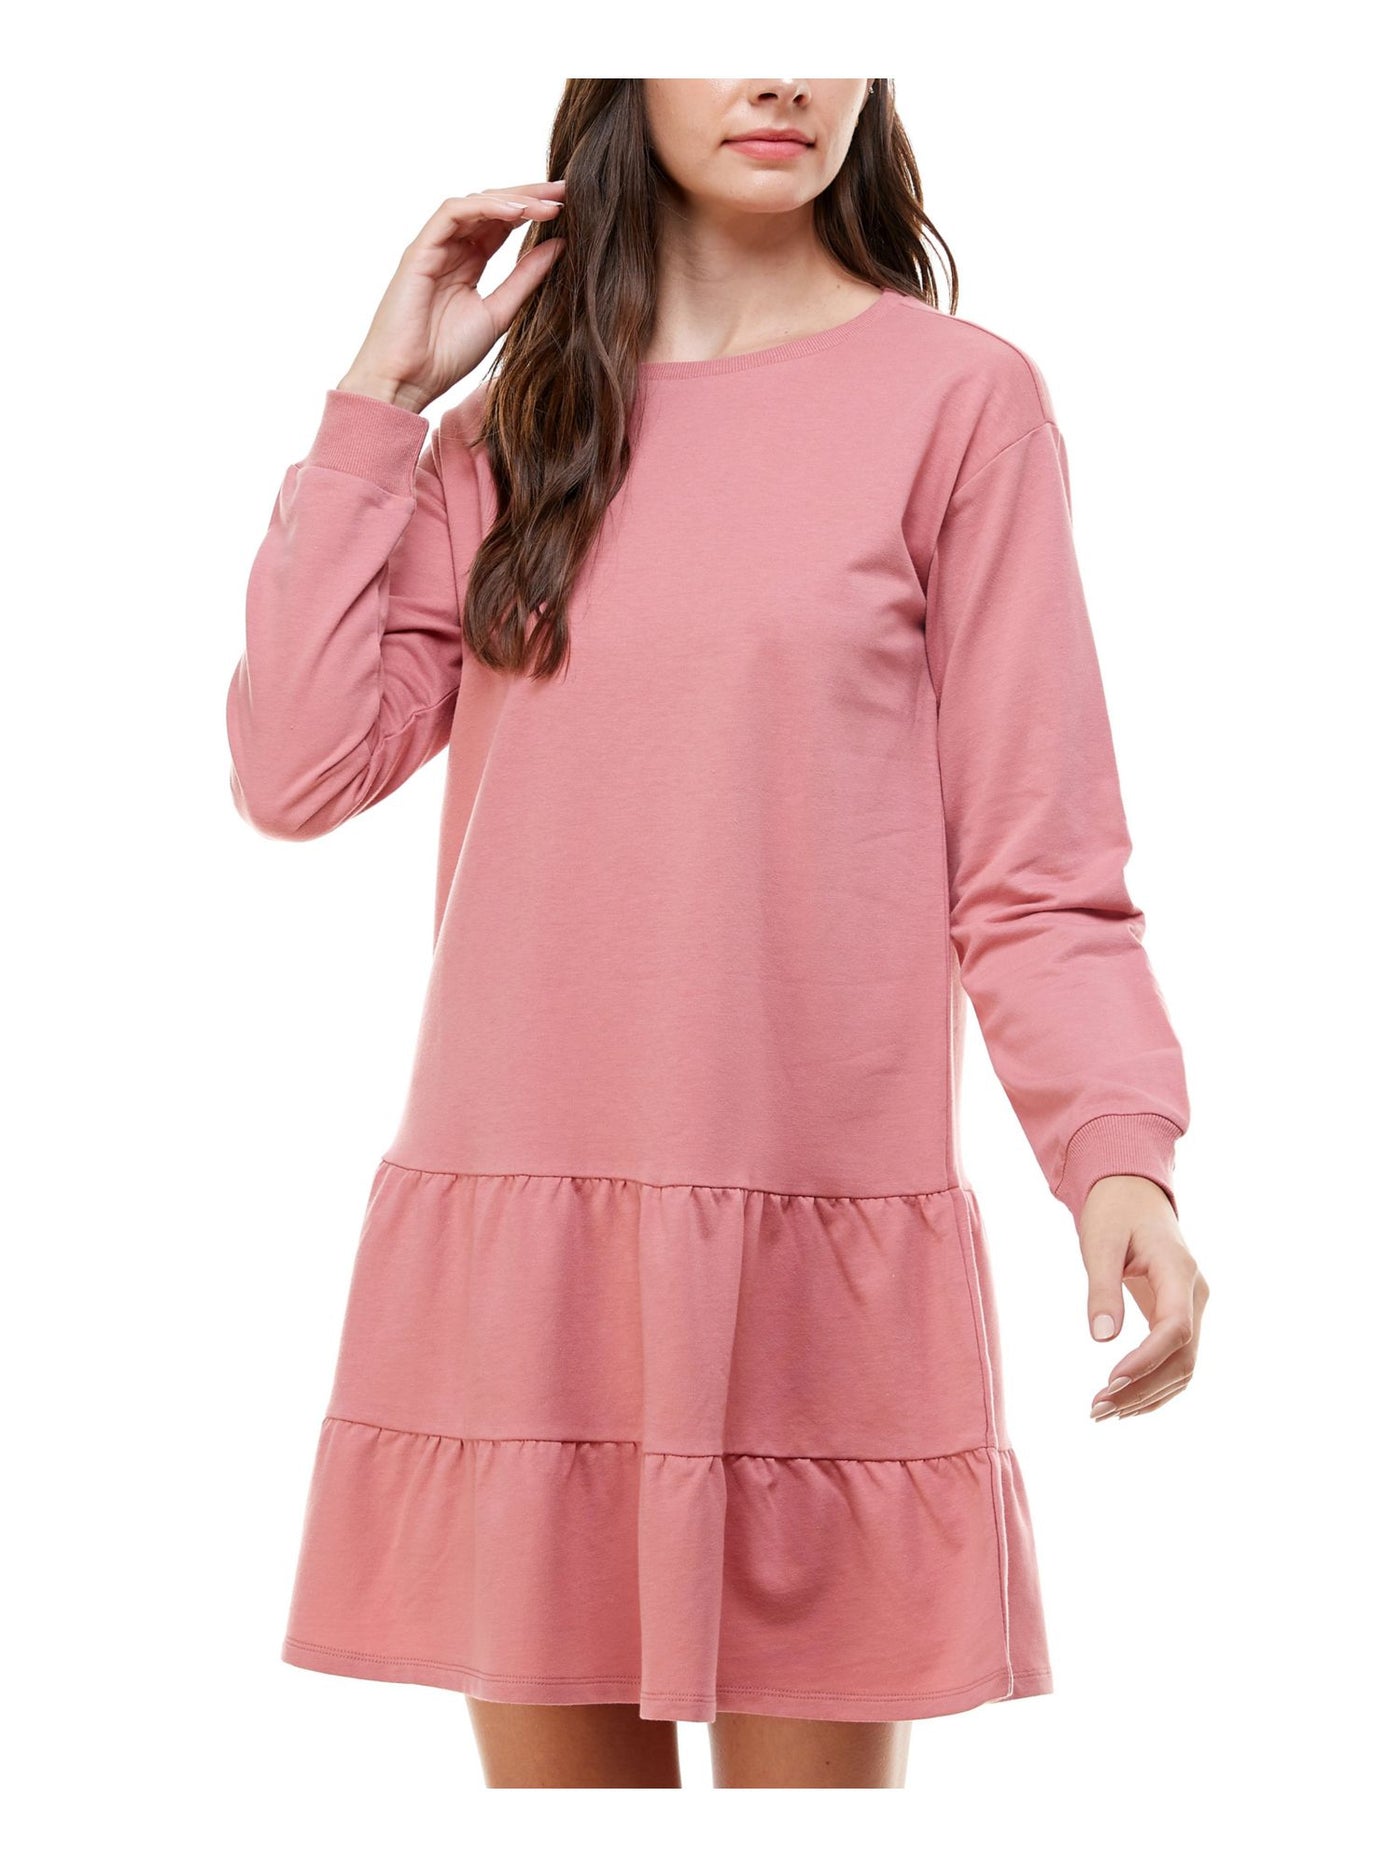 PLANET GOLD Womens Pink Long Sleeve Short A-Line Dress Juniors Size: XXS